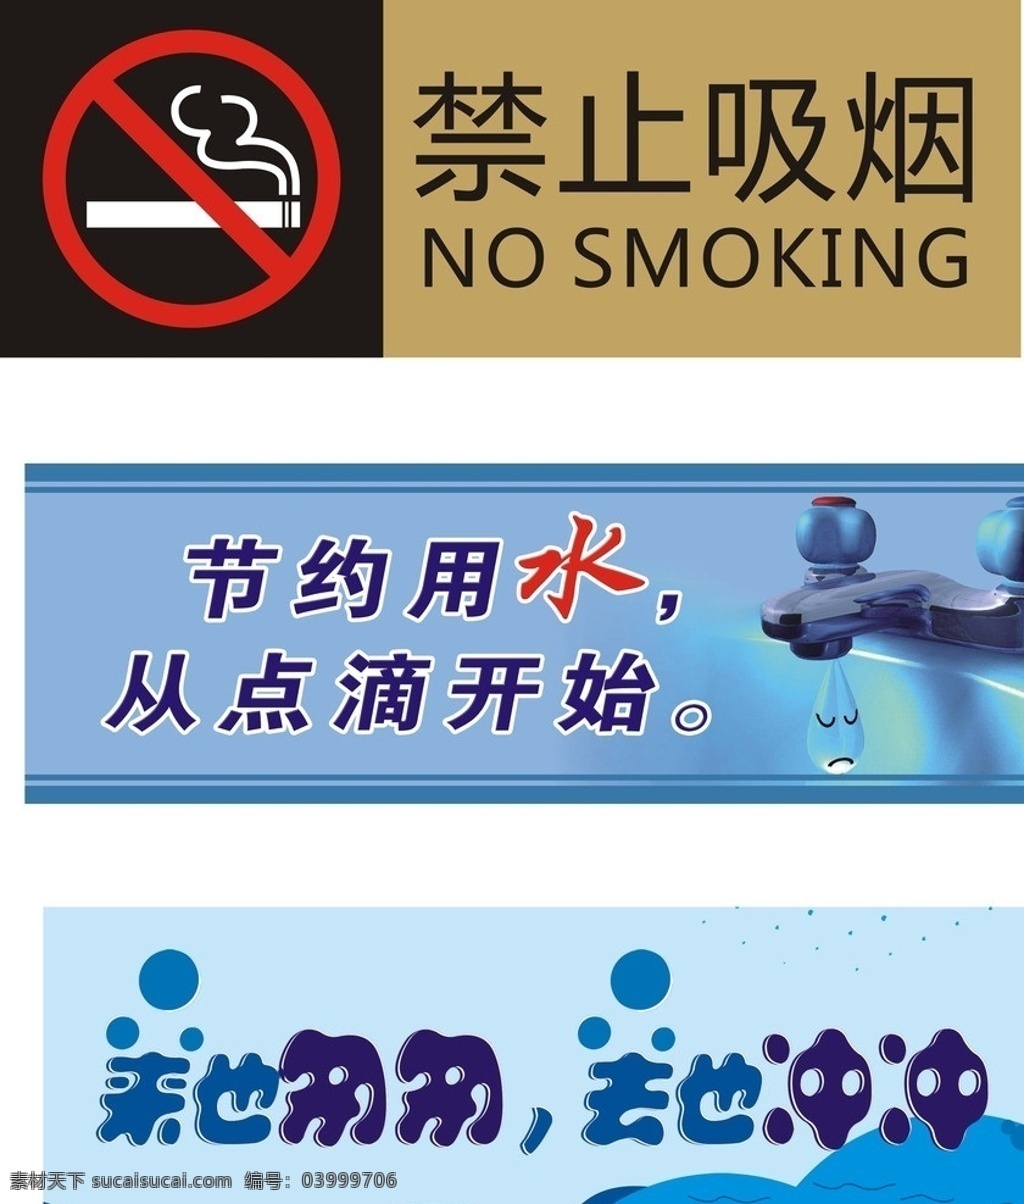 厕所文化 禁止吸烟 节约用水 来也匆匆 去也冲冲 百货 小图标 标识标志图标 矢量